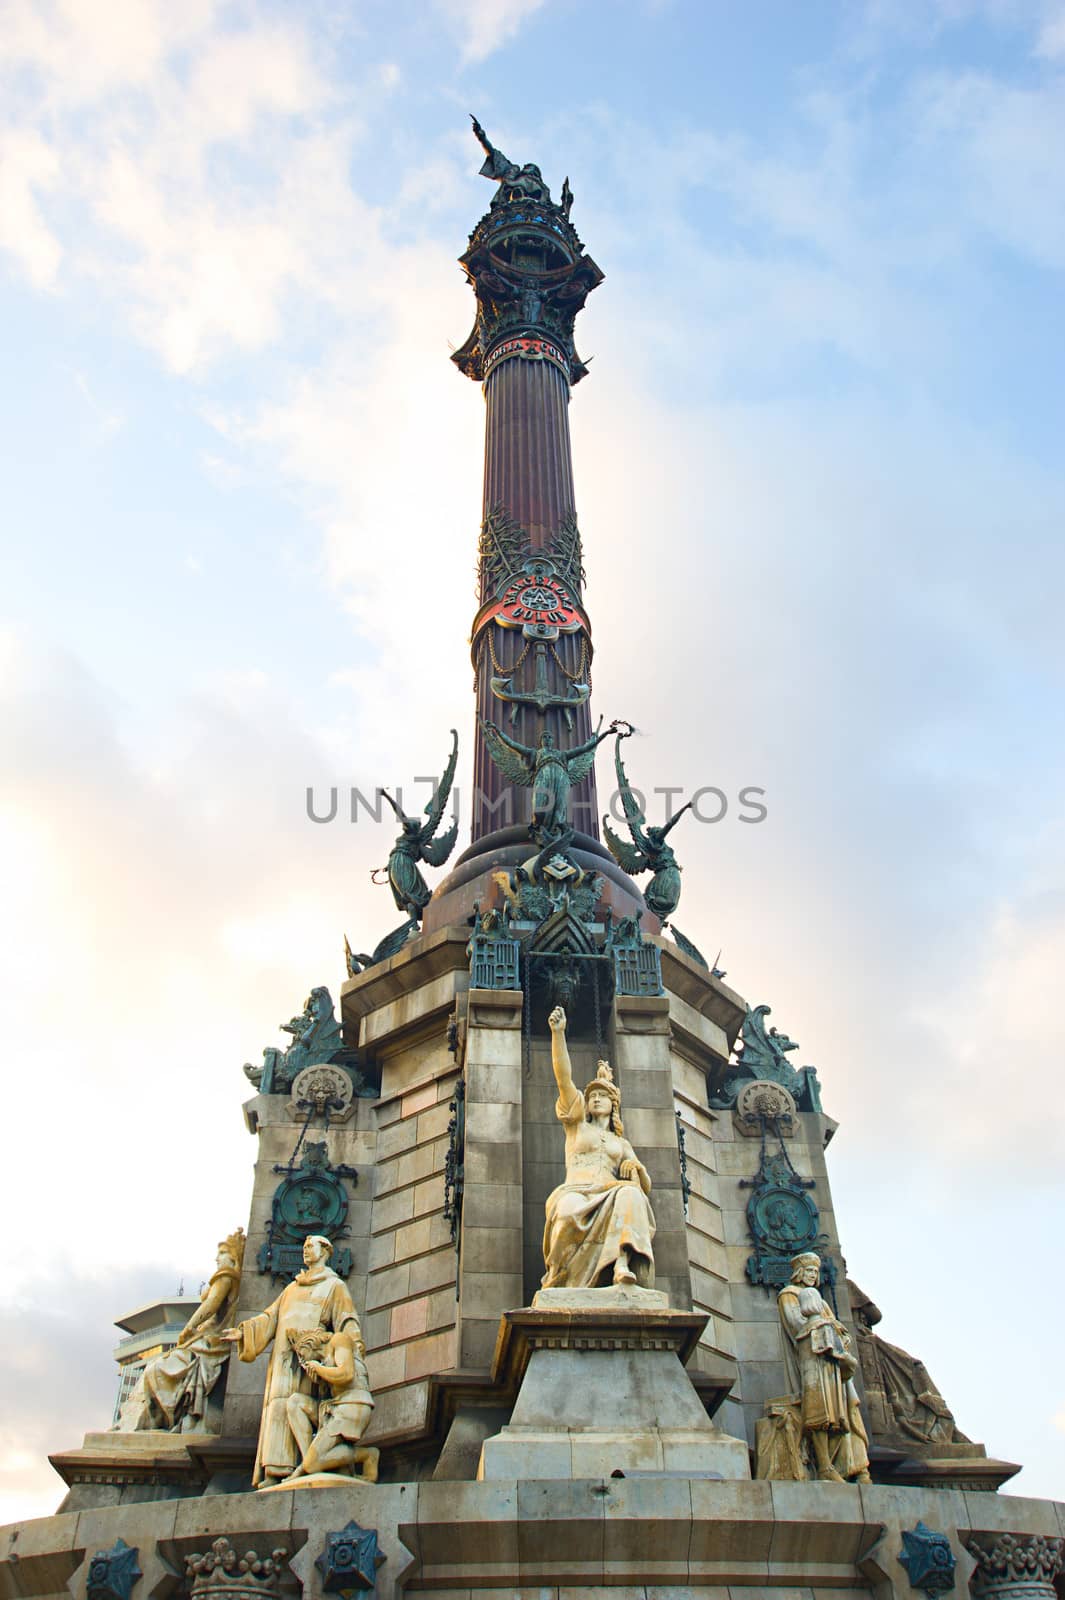 The Columbus Monument in Barcelona by joyfull